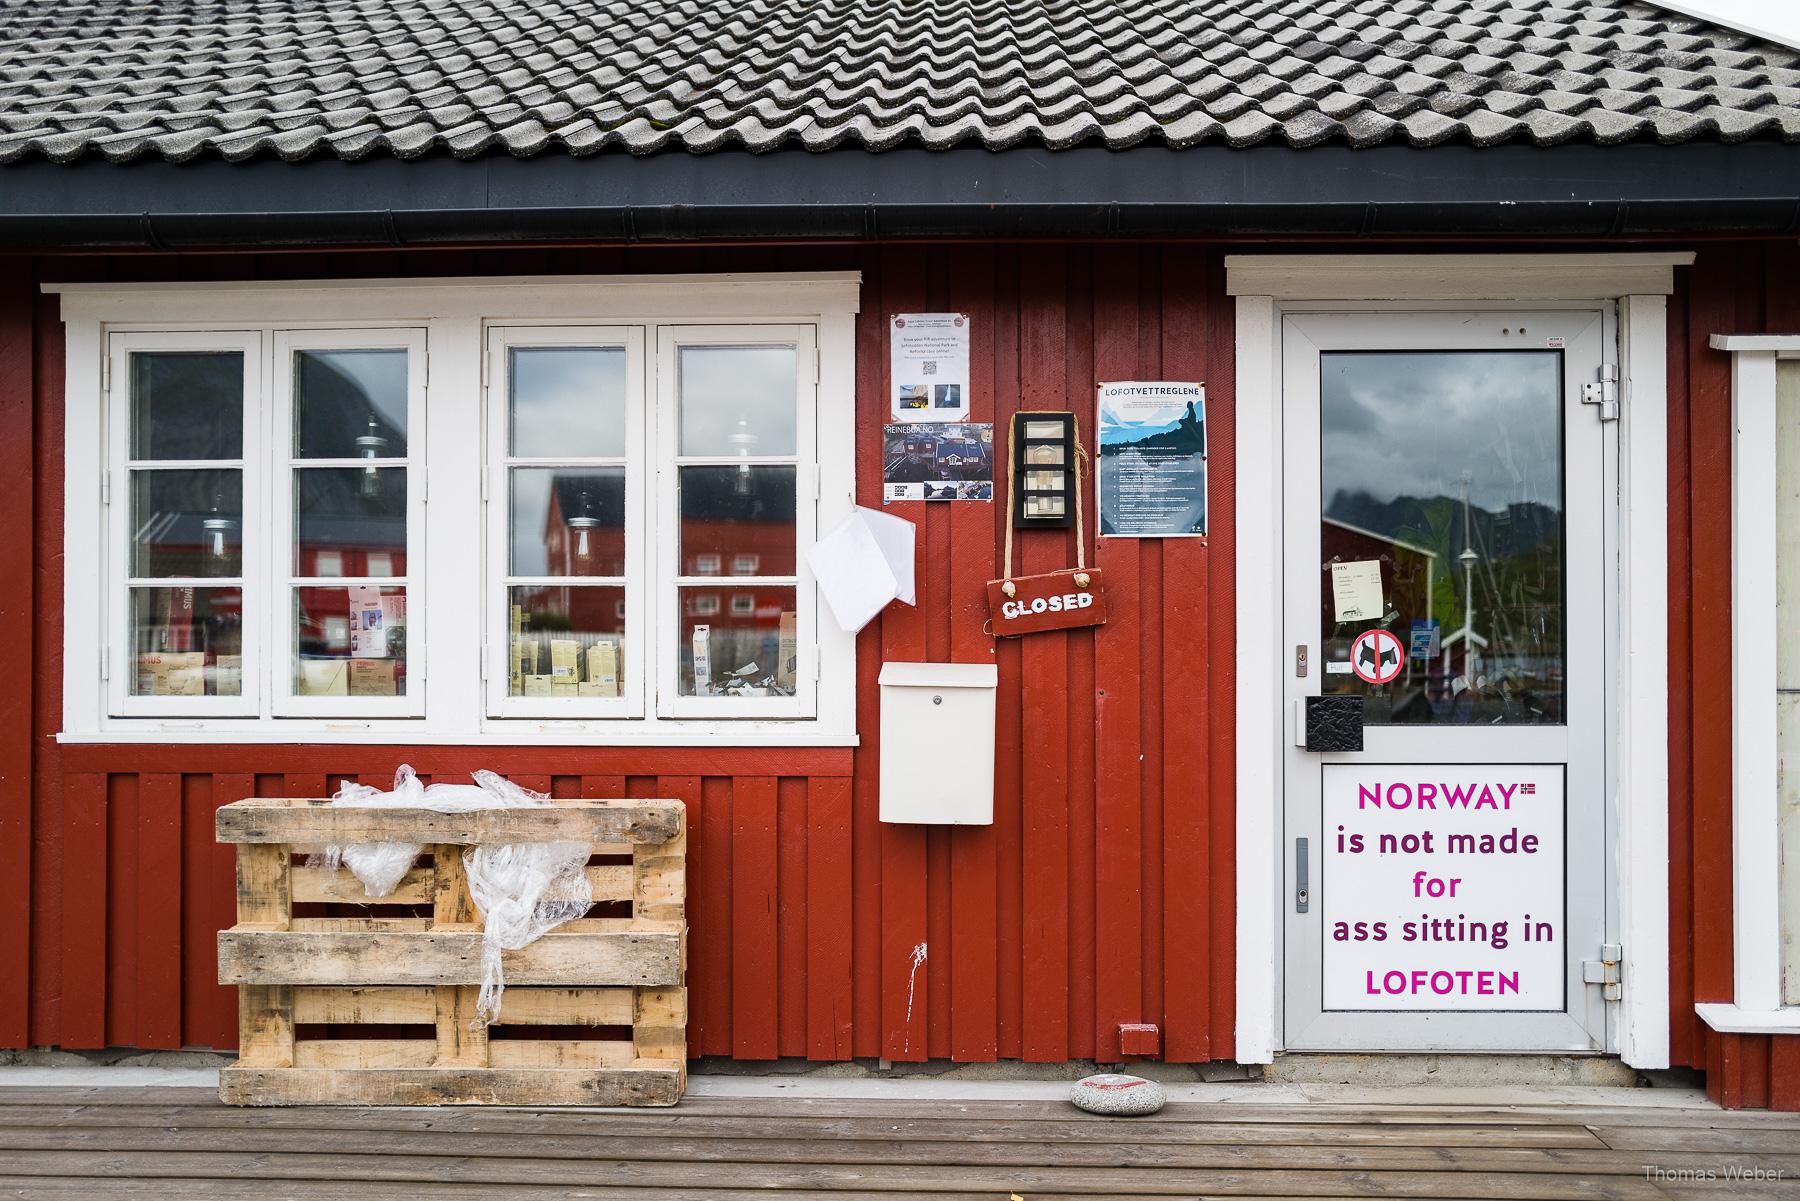 Roadtrip auf die Lofoten in Norwegen, Thomas Weber, Fotograf Oldenburg